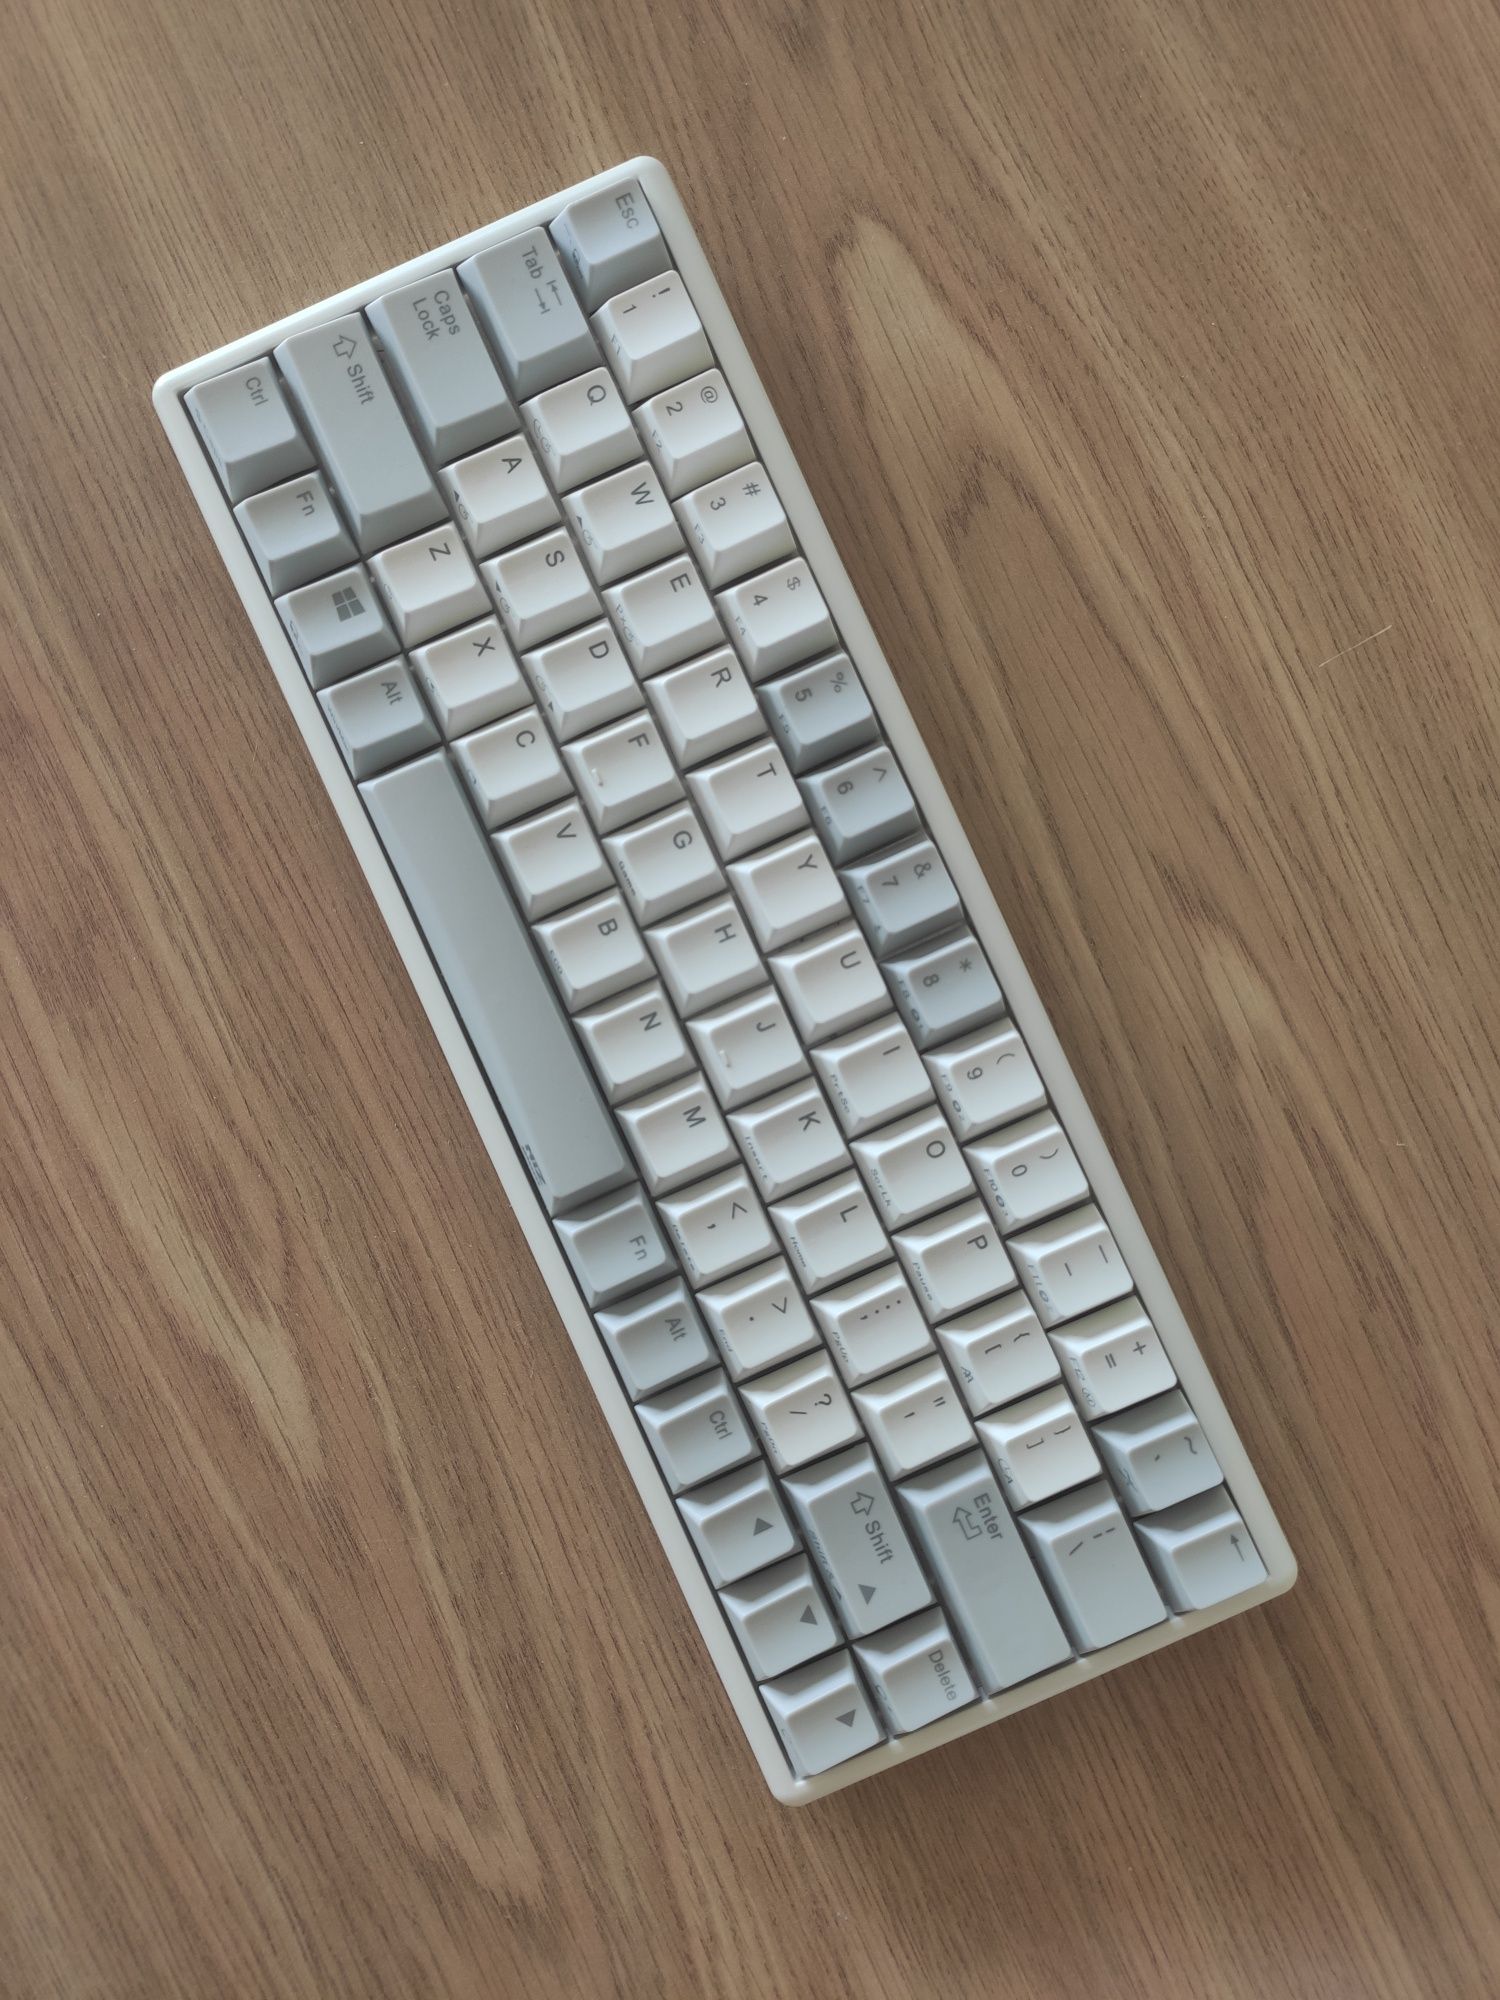 Niz atom66 keyboard (Bluetooth + USB-C)